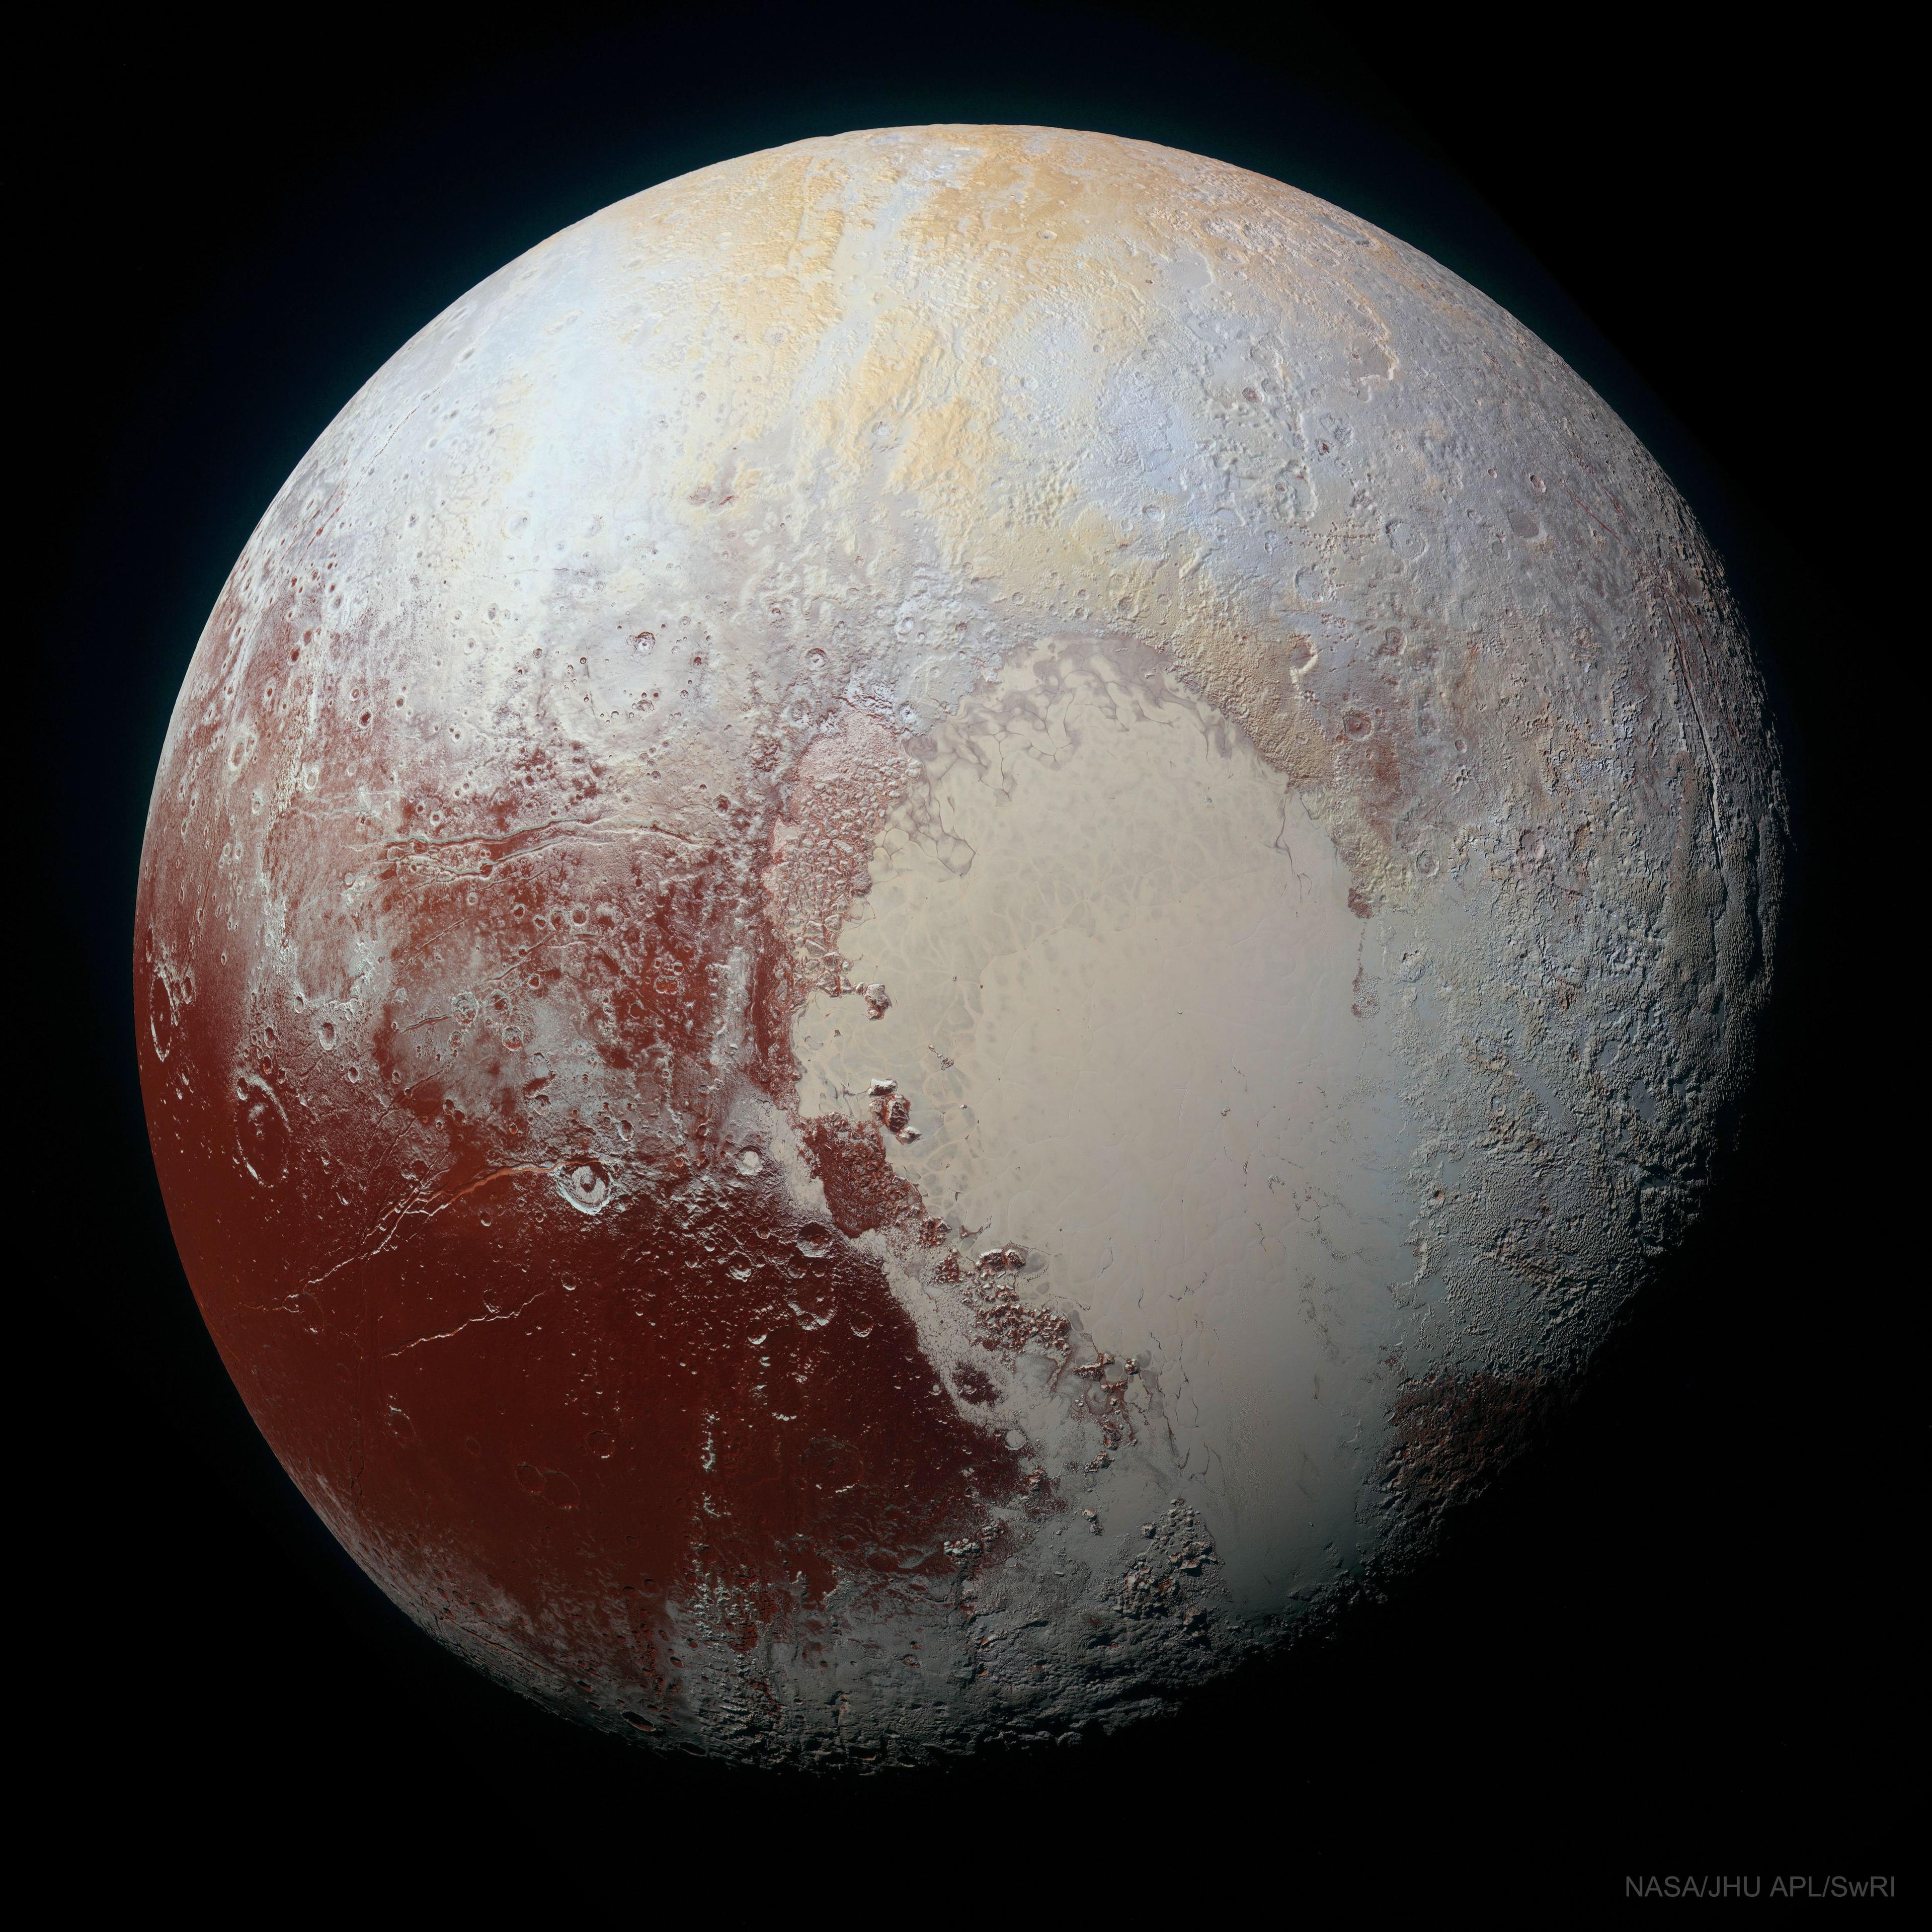 صورة لكوكب "پلوتو" محسّنة الألوان وعالية الدقة كما شوهد من المسبار الفضائي الروبوتي "نيو هورايزونز" في عام 2015.